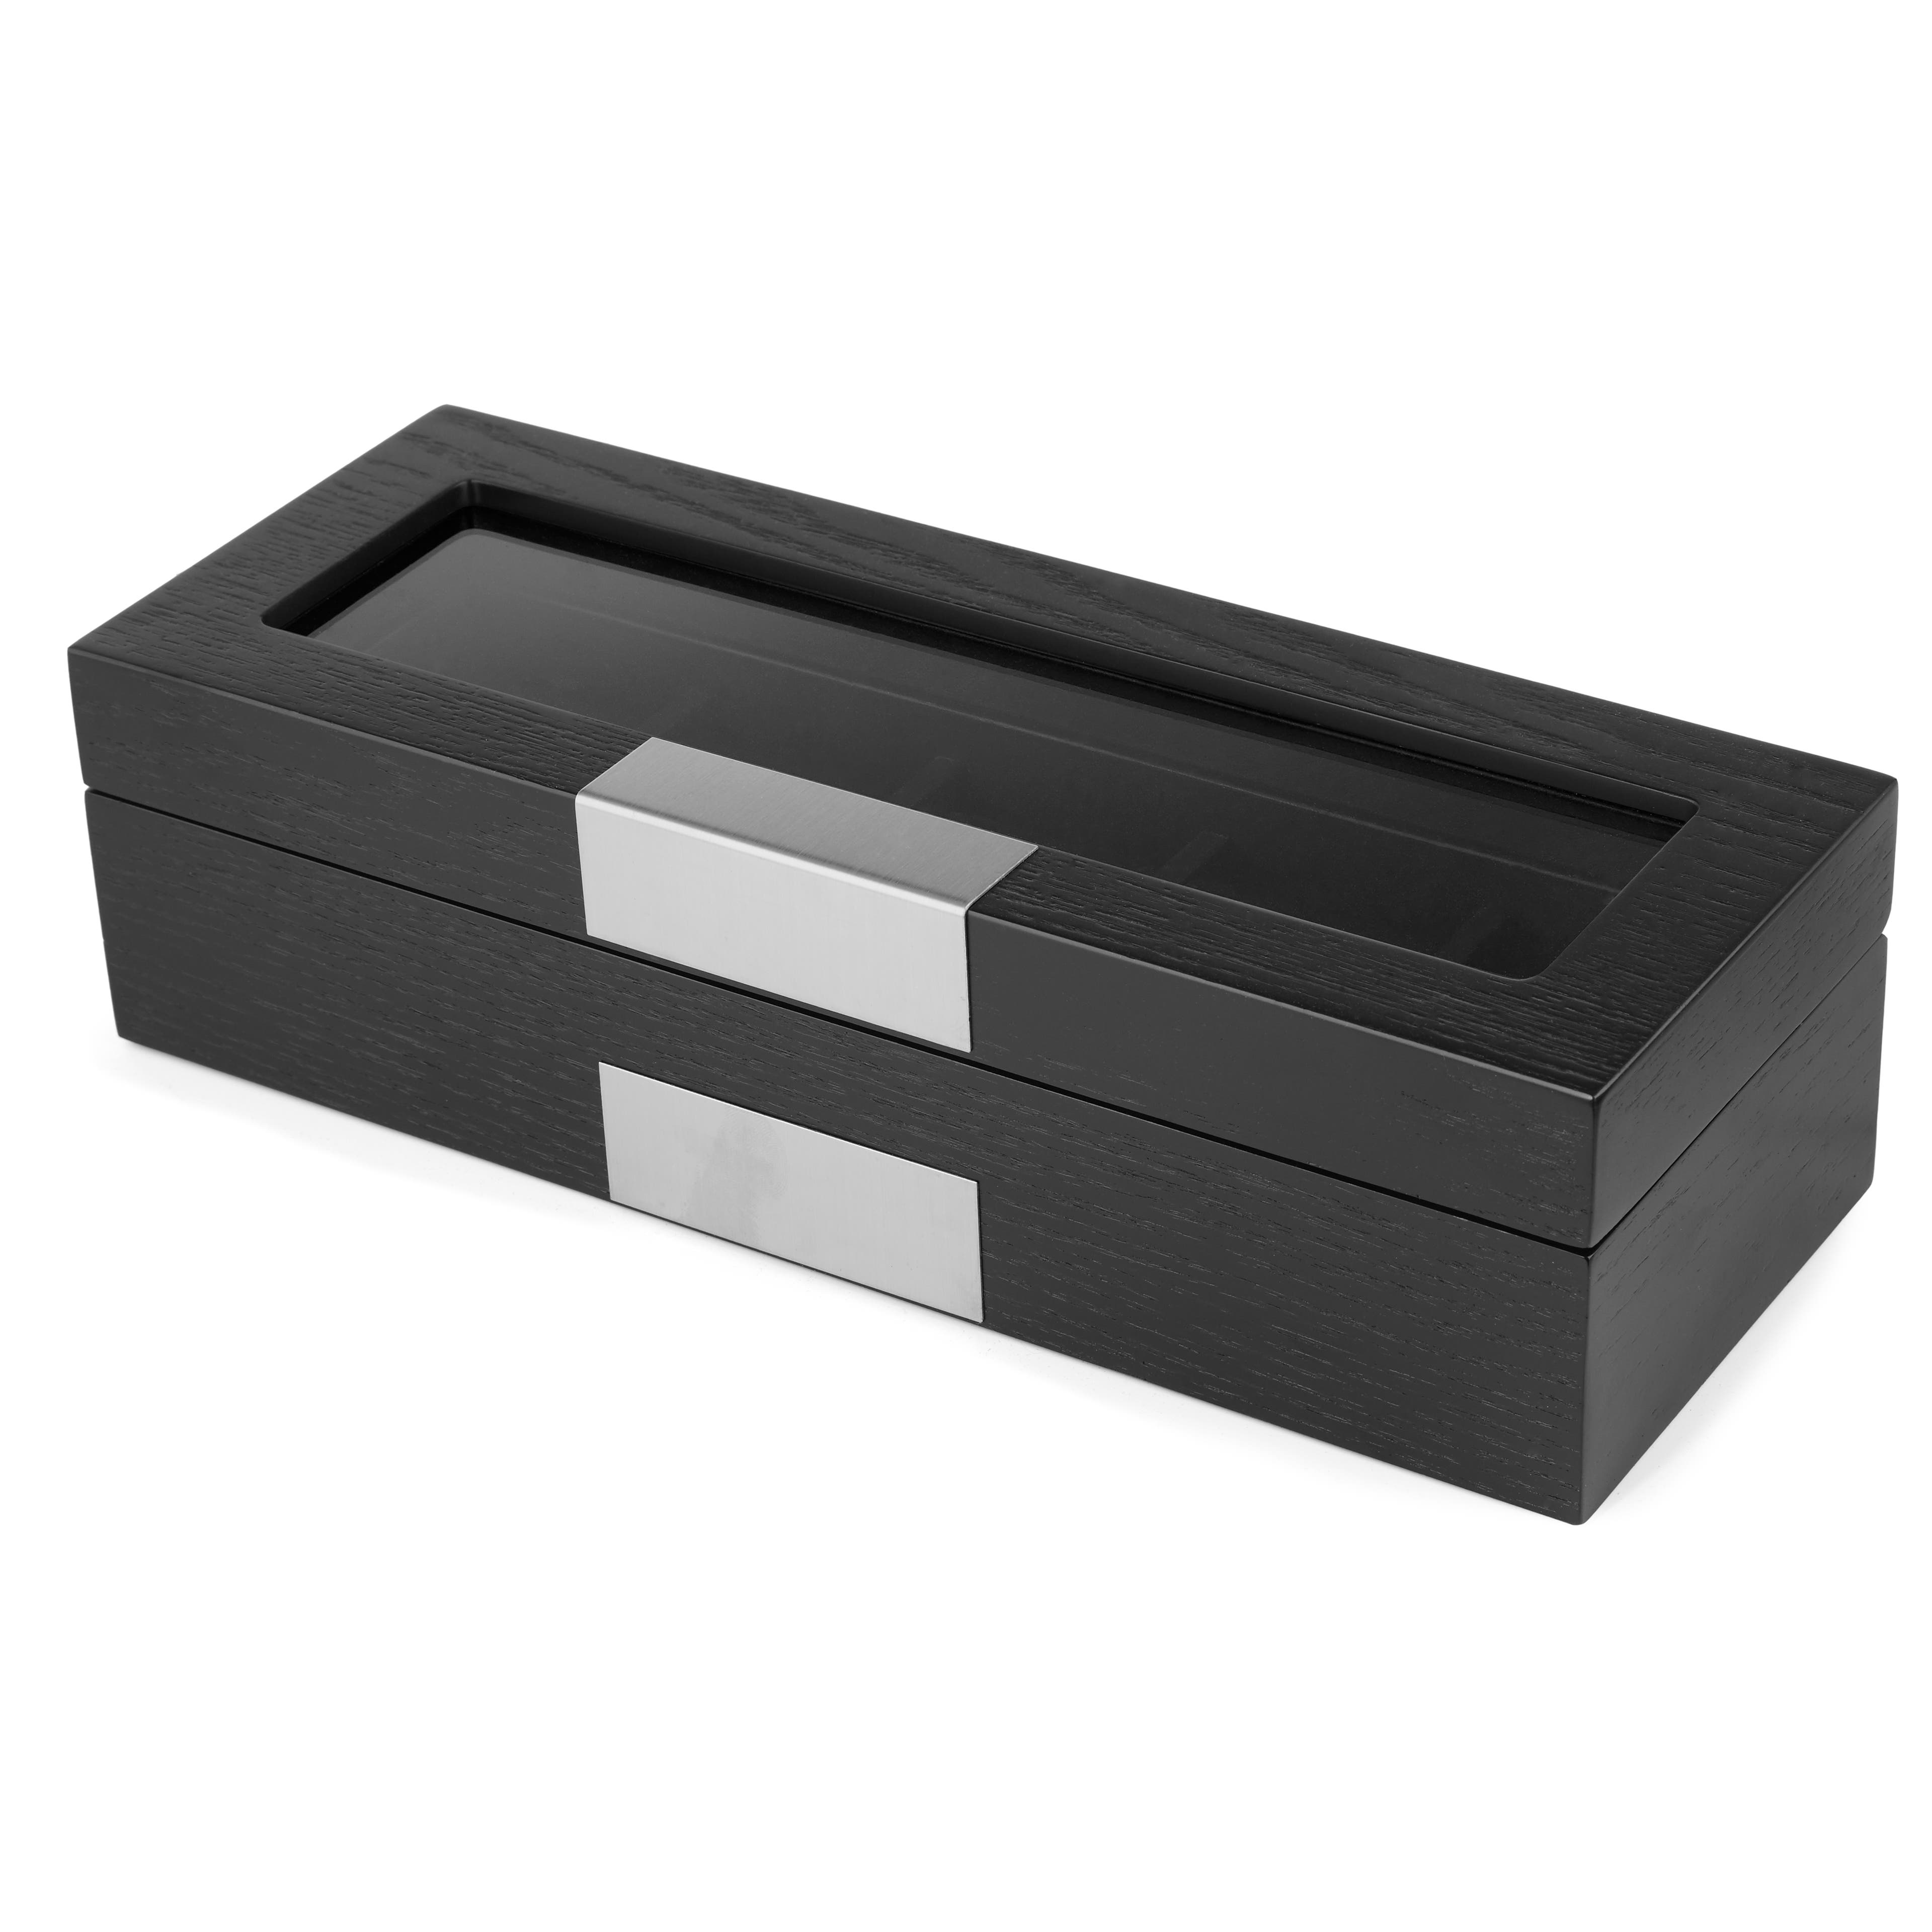 Ezüst-fekete színű fa óratartó doboz